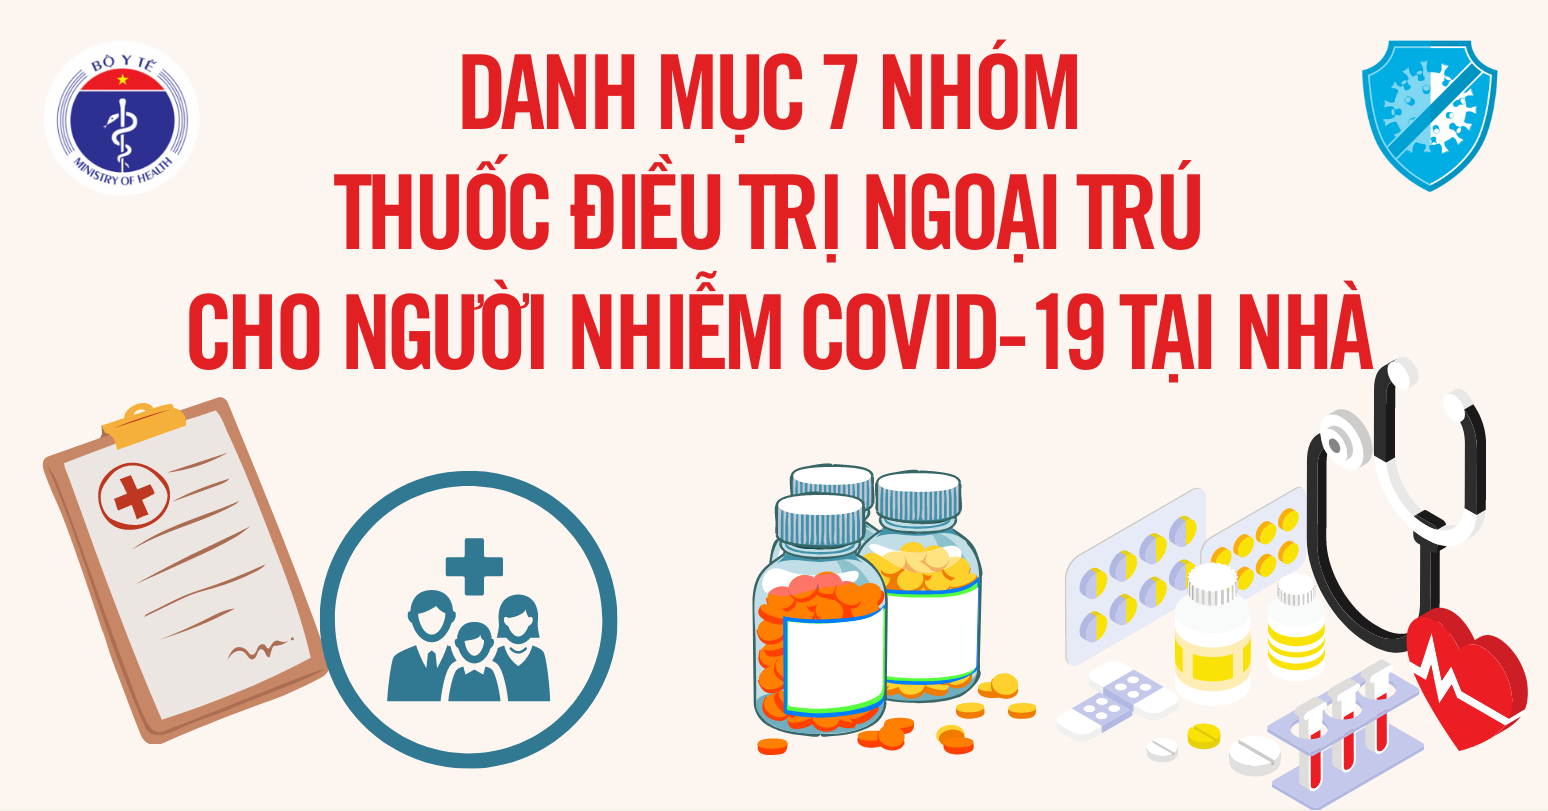 [Infographic] Danh mục 7 nhóm thuốc điều trị ngoại trú cho người nhiễm Covid-19 tại nhà